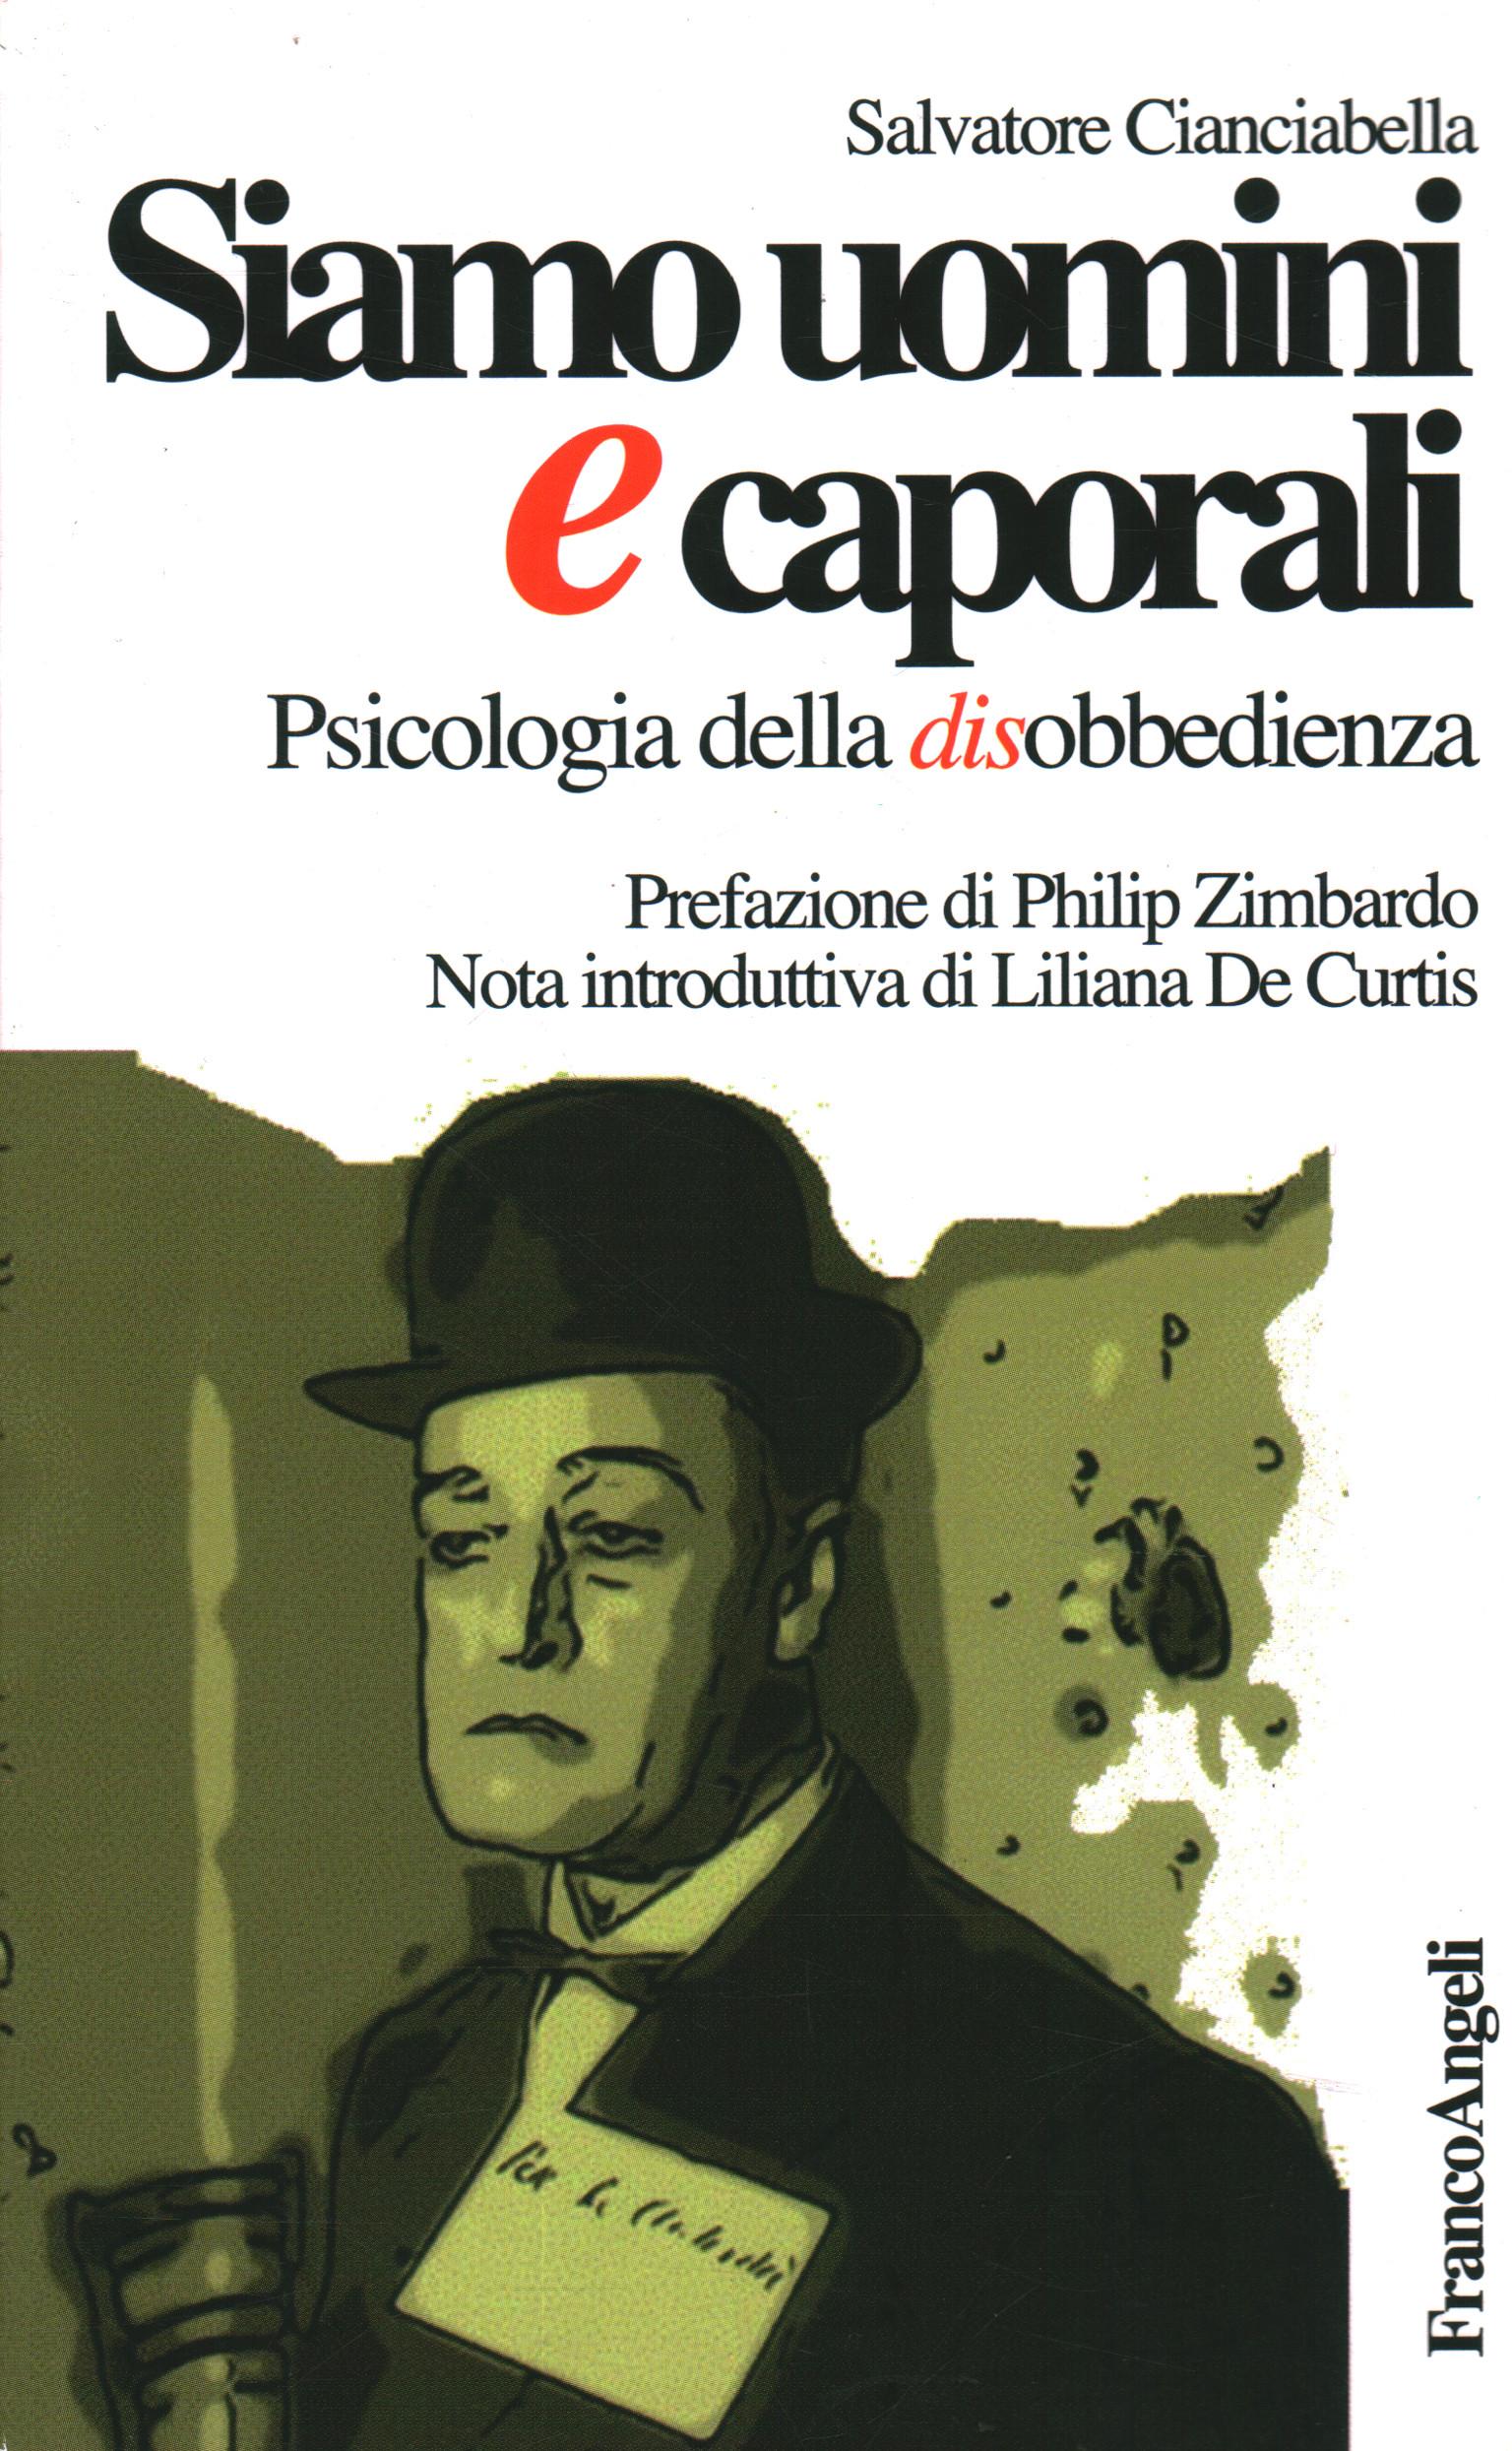 Nous sommes des hommes et des caporaux, Salvatore Cianciabella